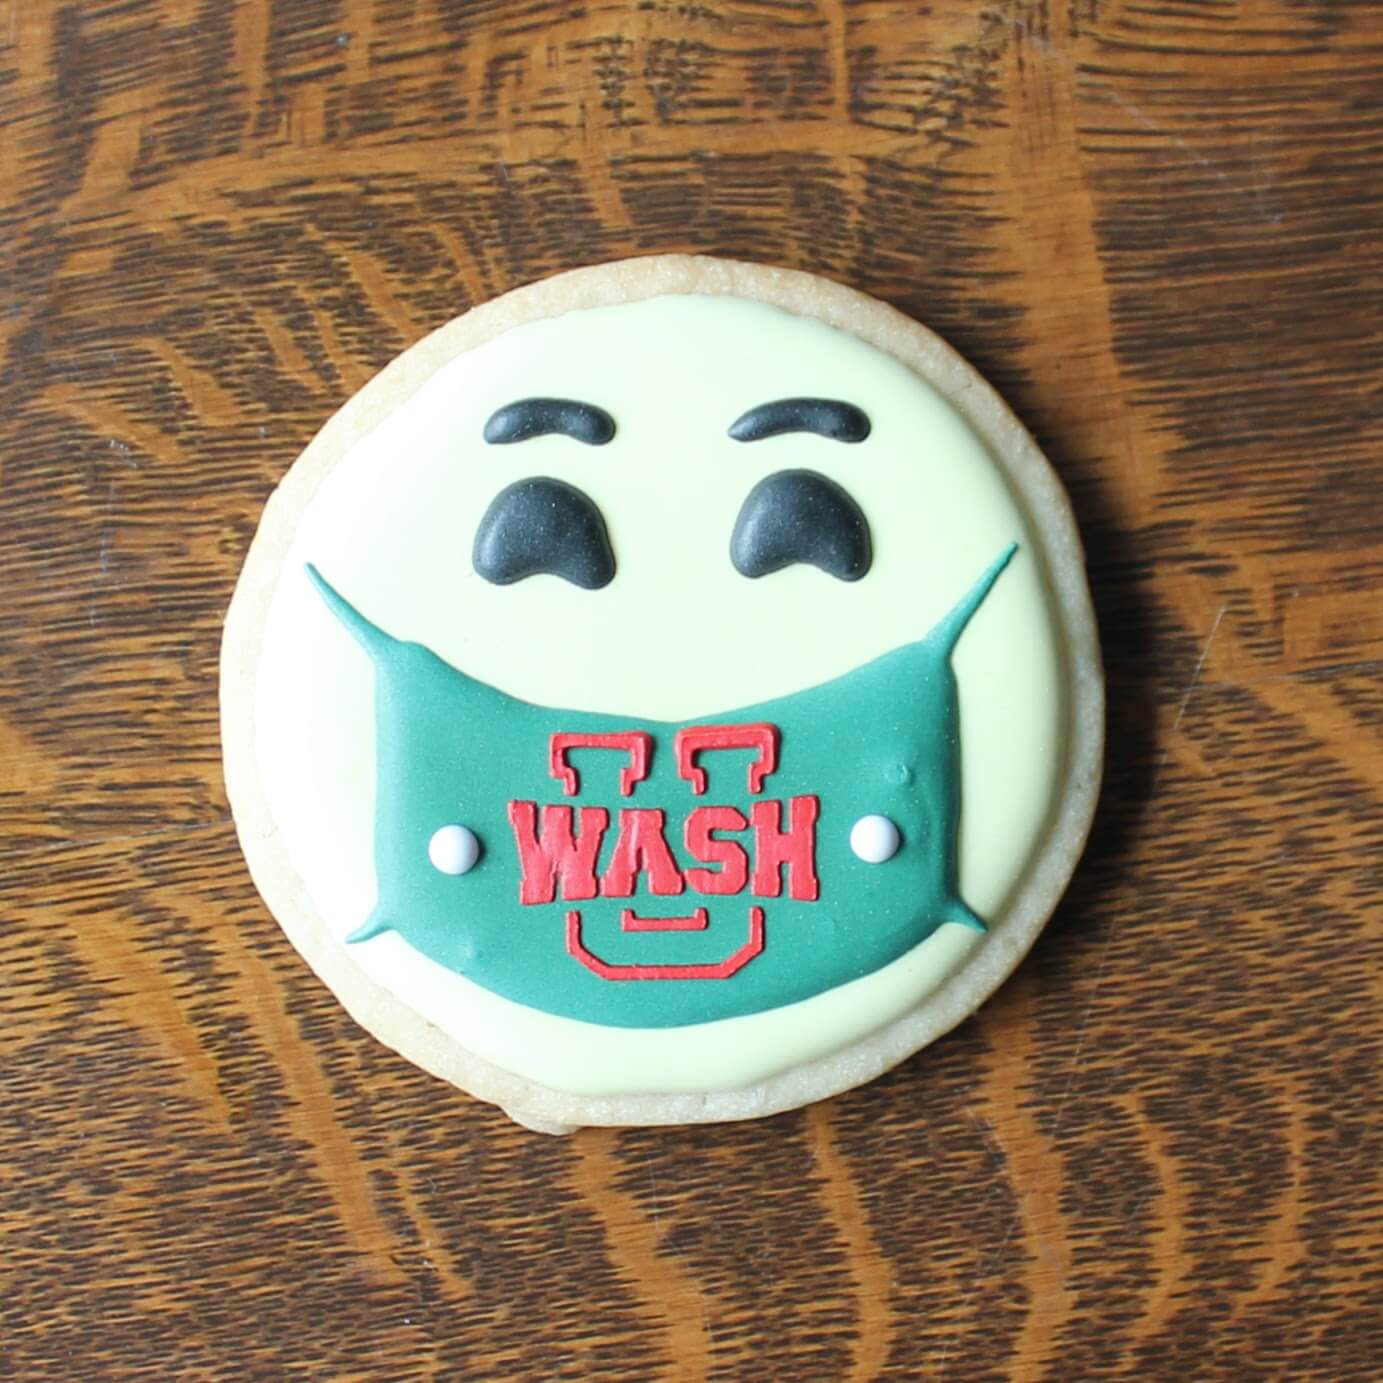 WashU - Cookies